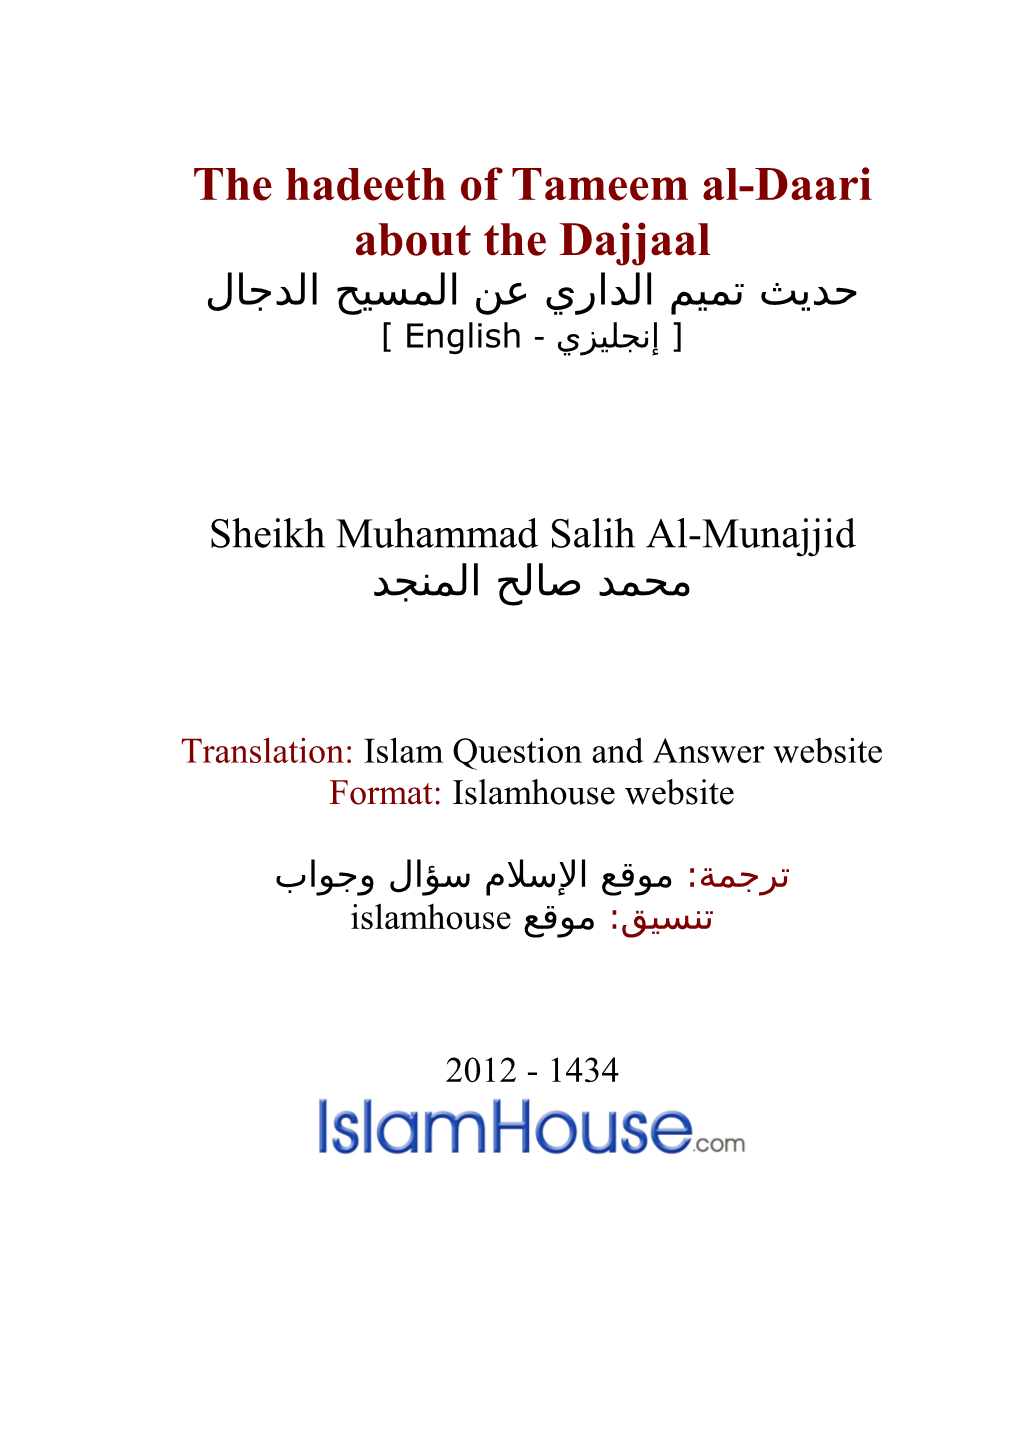 The Hadeeth of Tameem Al-Daari About the Dajjaal